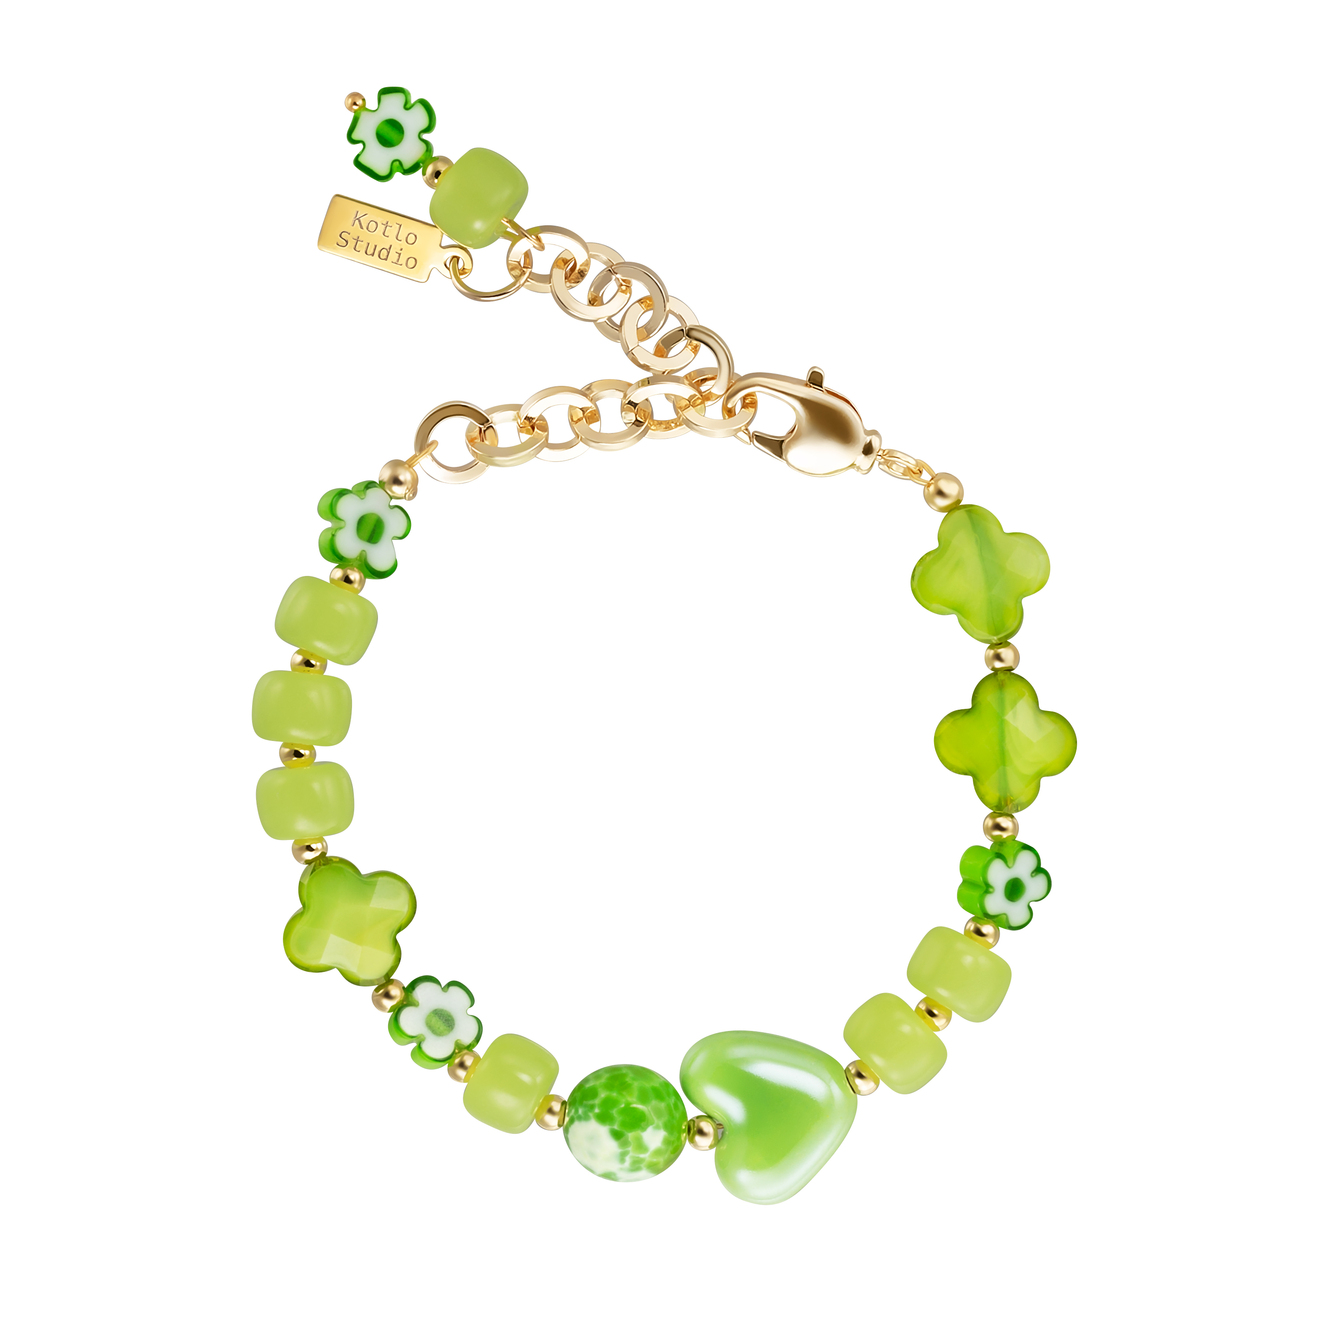 Kotlo Studio Green Sugar Baby. Зеленый браслет из керамических и стеклянных бусин